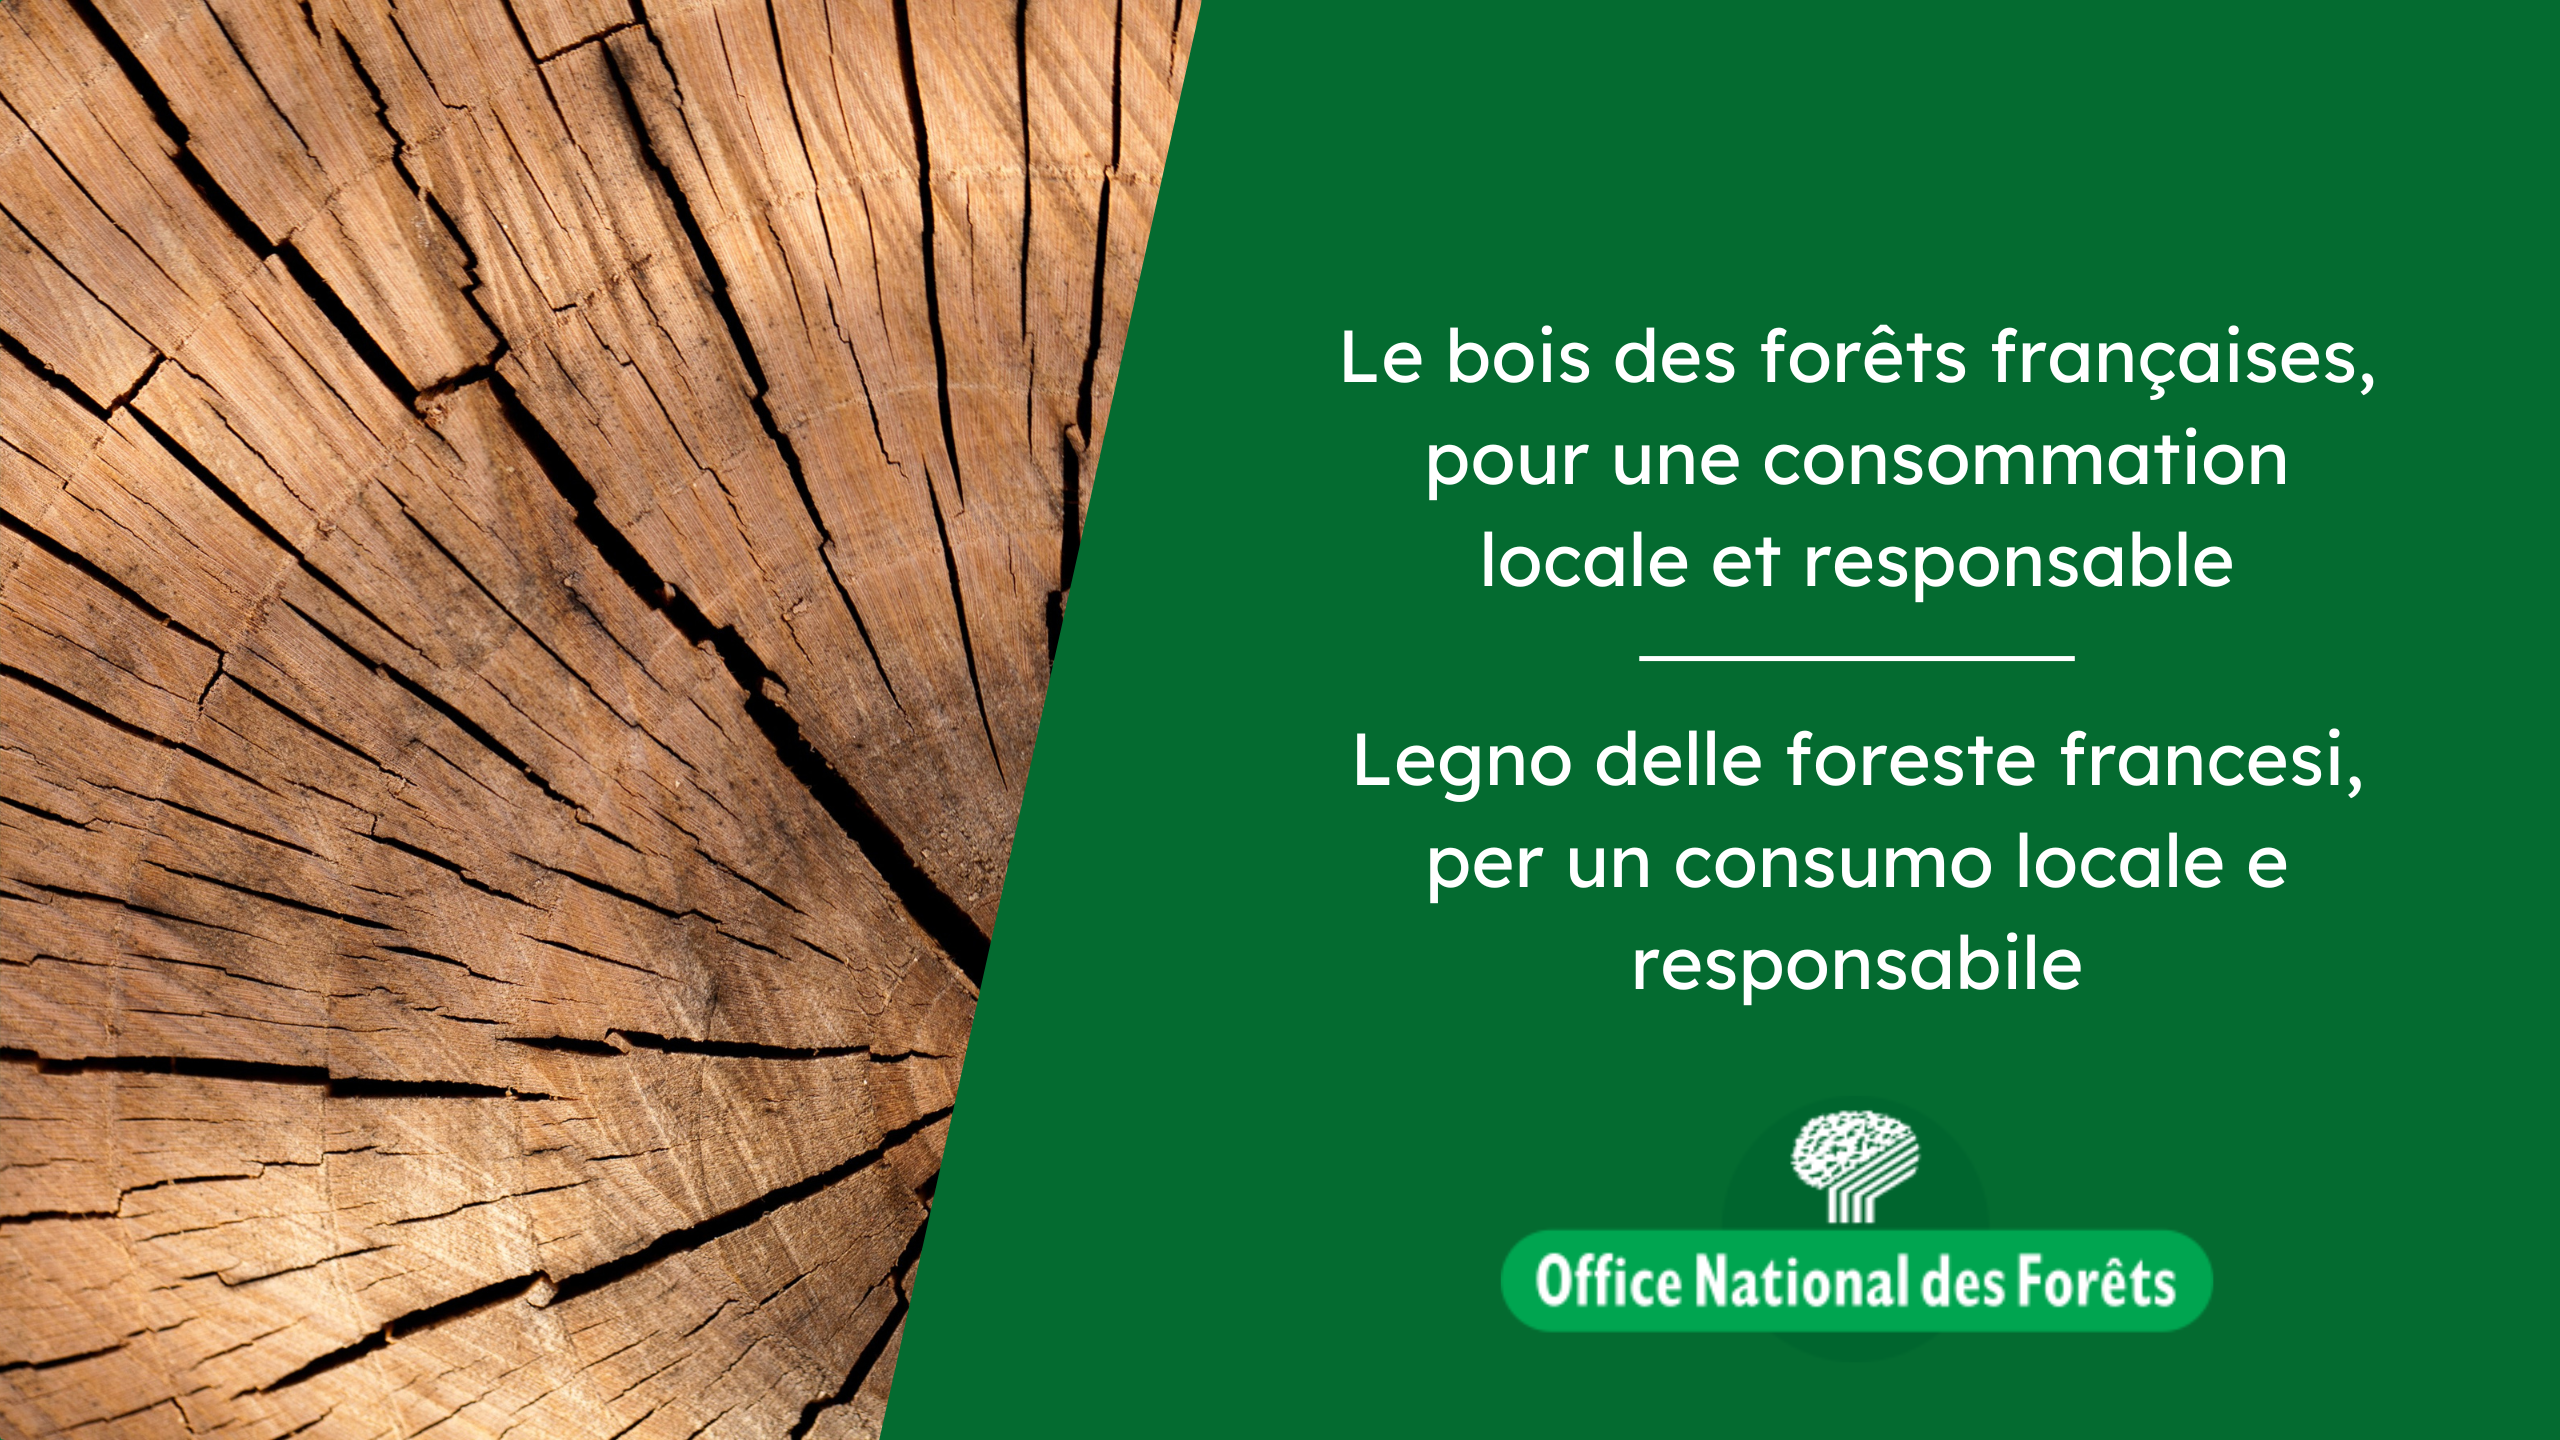 Le bois des forêts françaises, pour une consommation locale et responsable